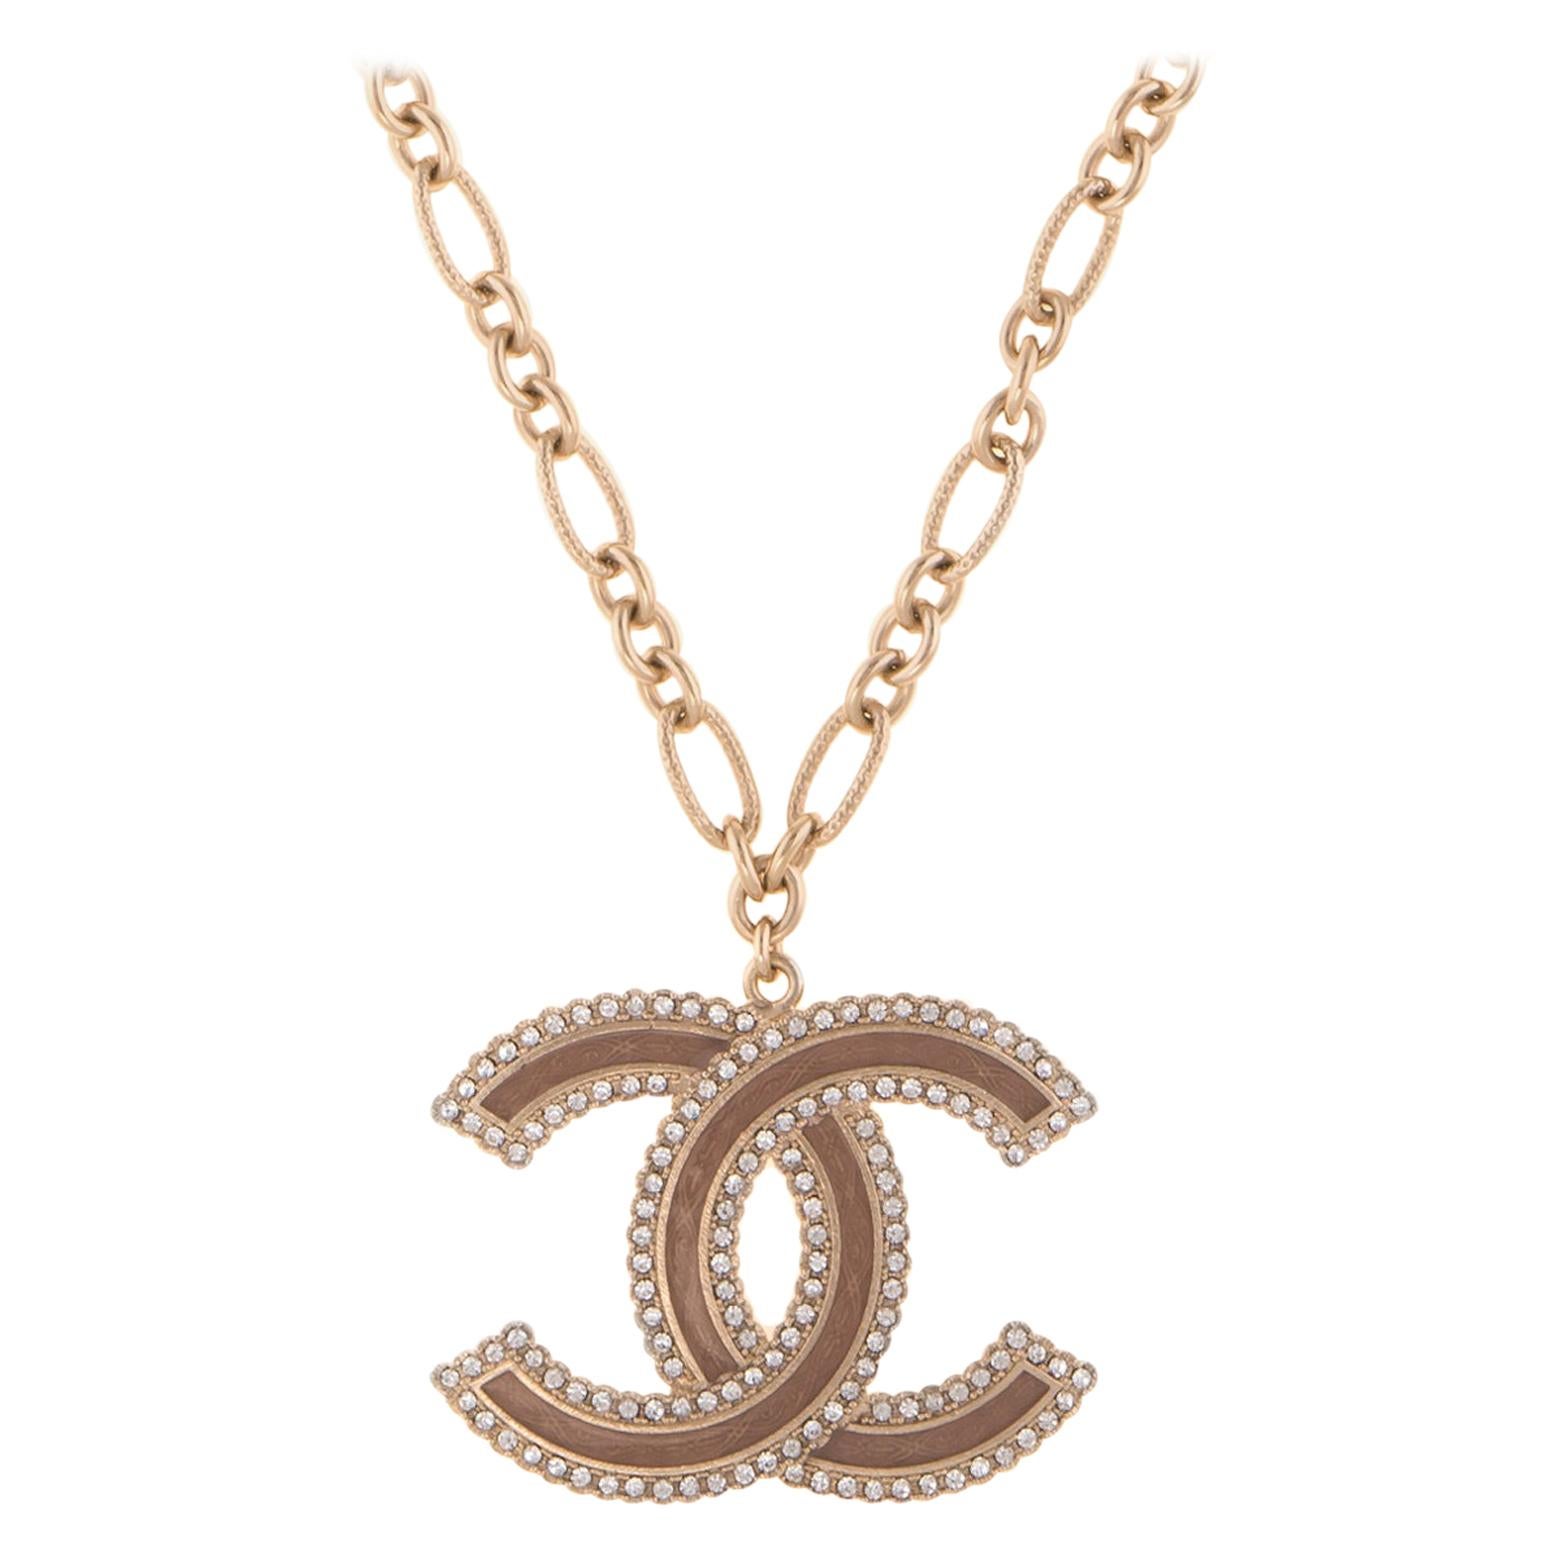 Authentic Vintage Chanel necklace chain CC logo double C hoop